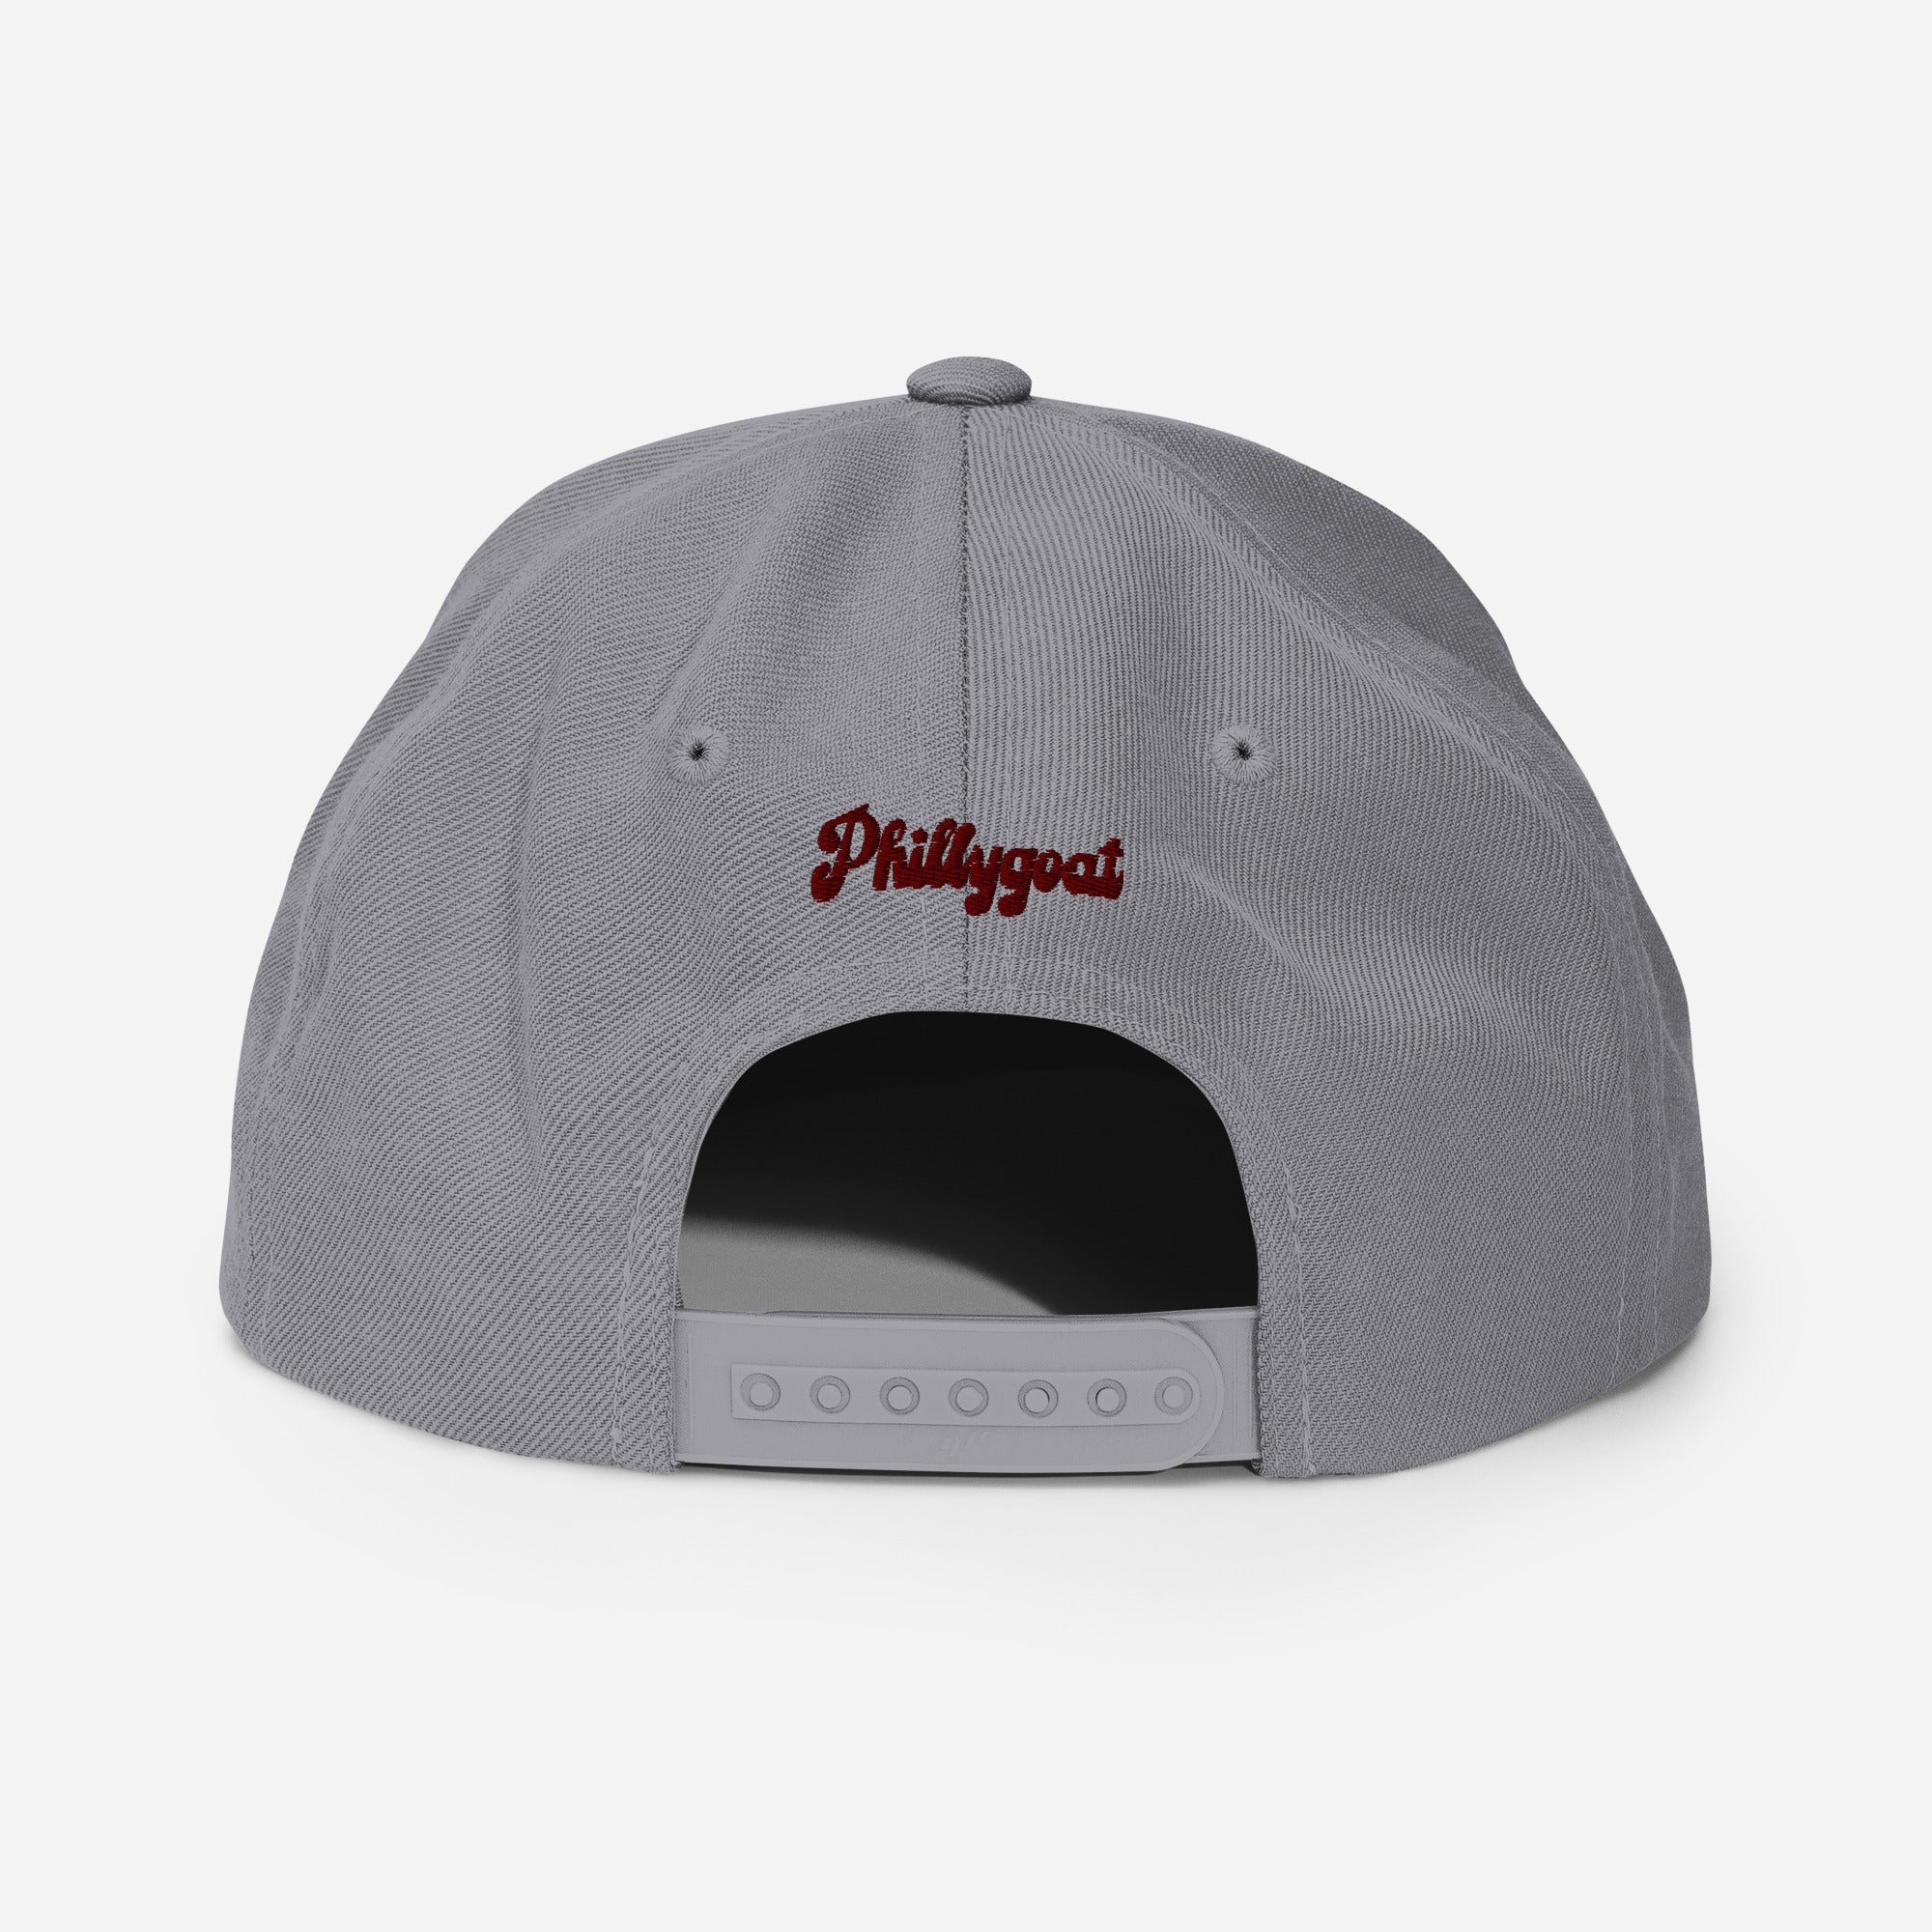 "Philadelphia Sillies" Snapback Hat